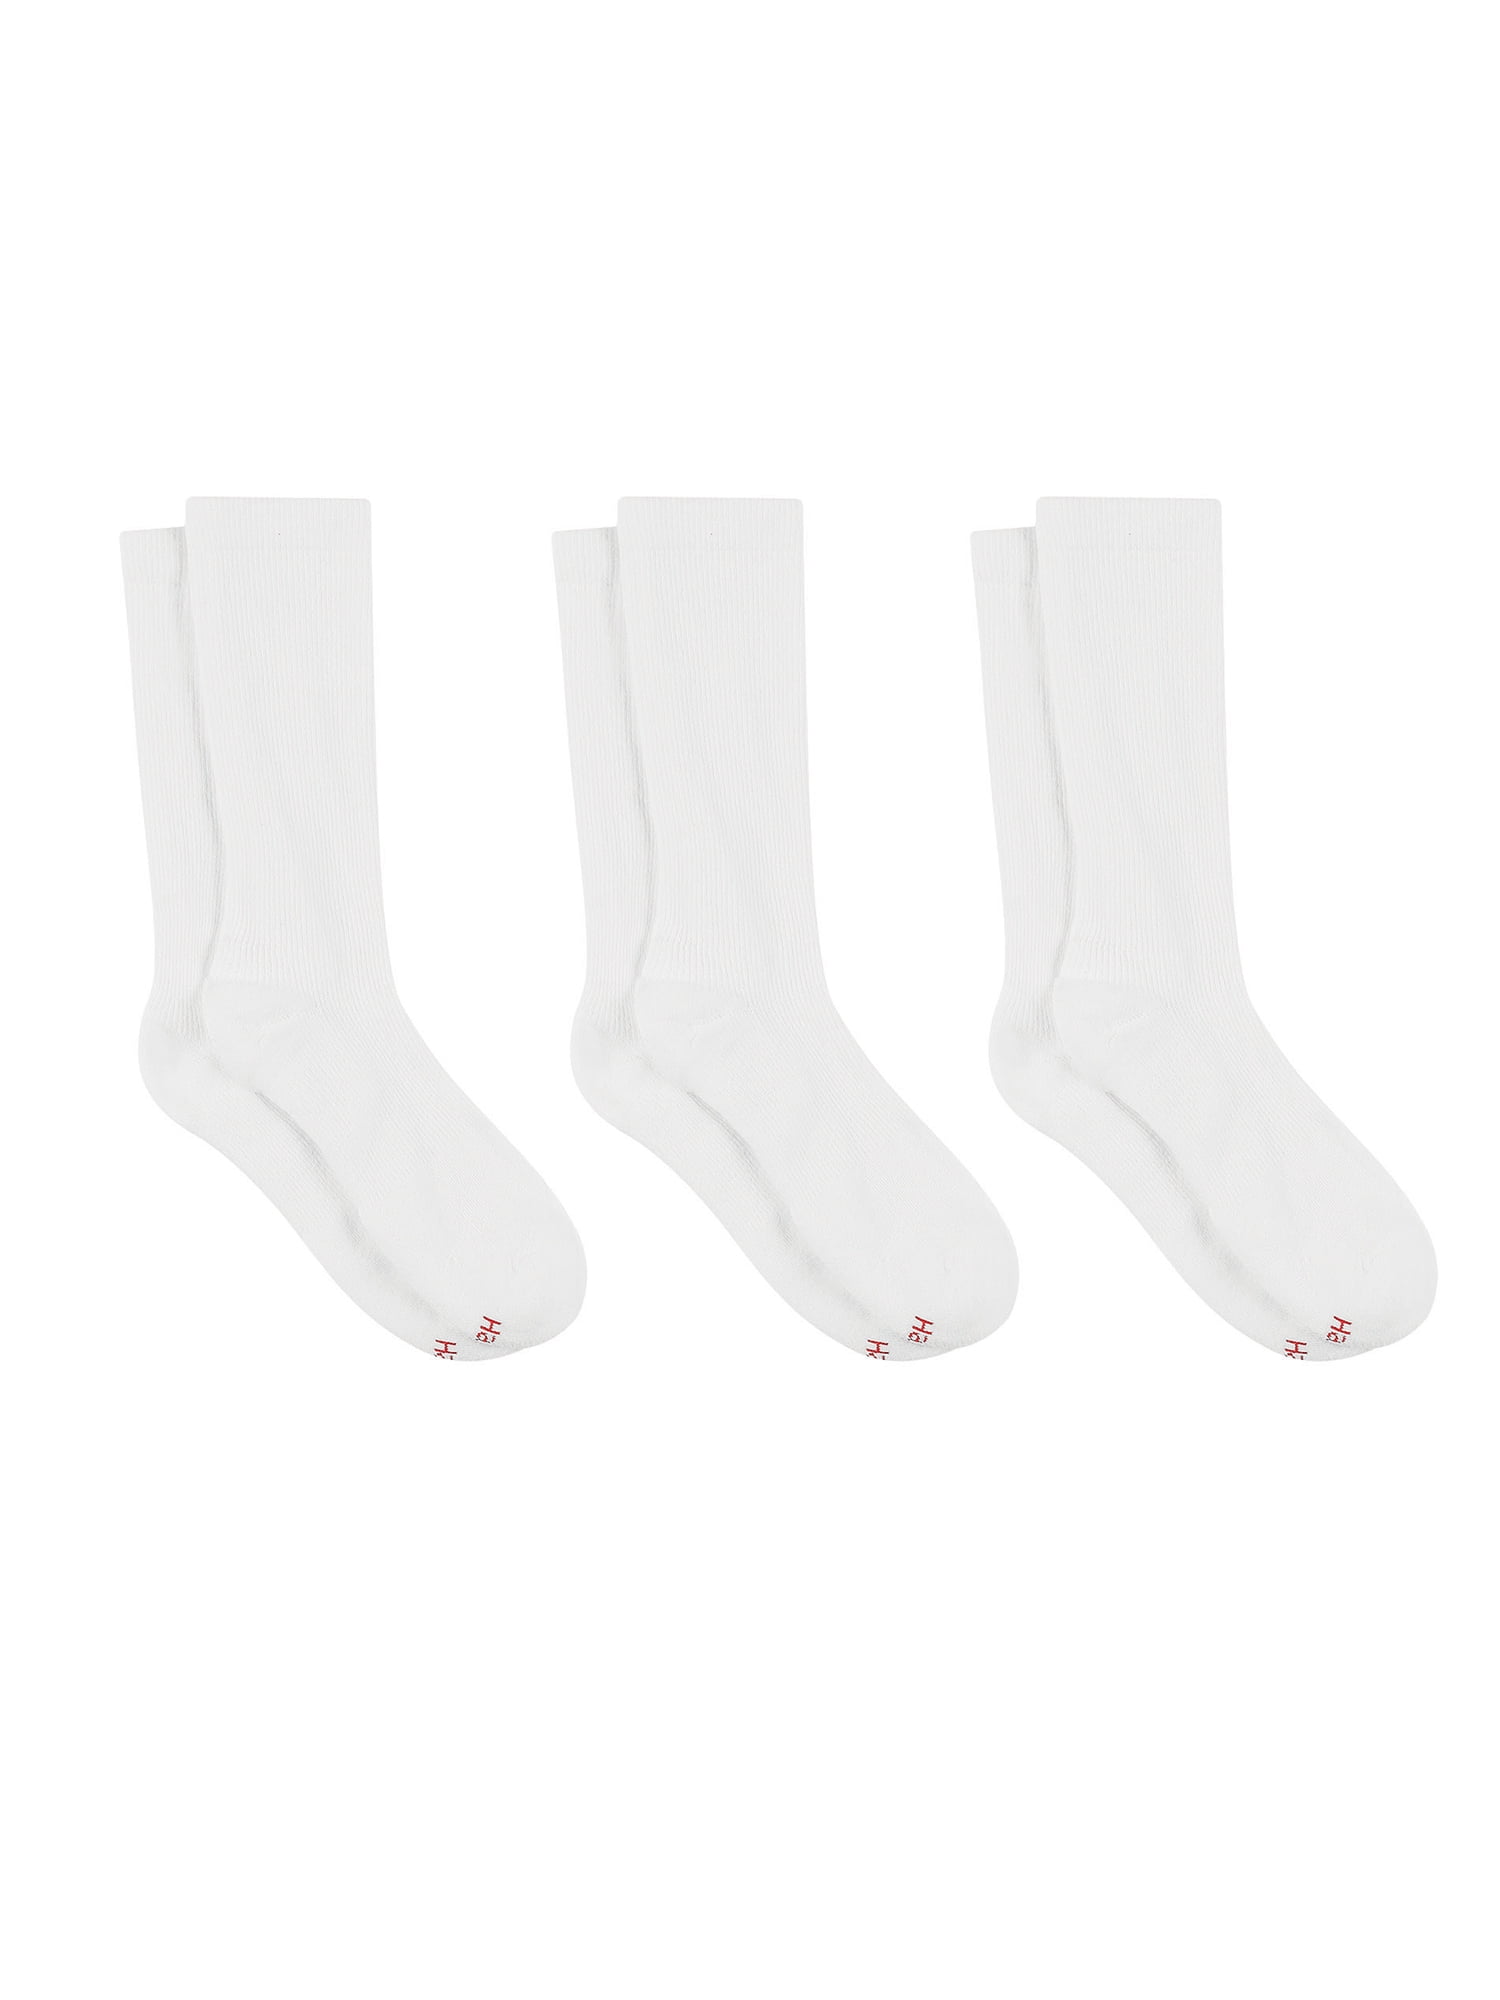 Hanes Men's Compression Crew Socks, 3-Pack - Walmart.com